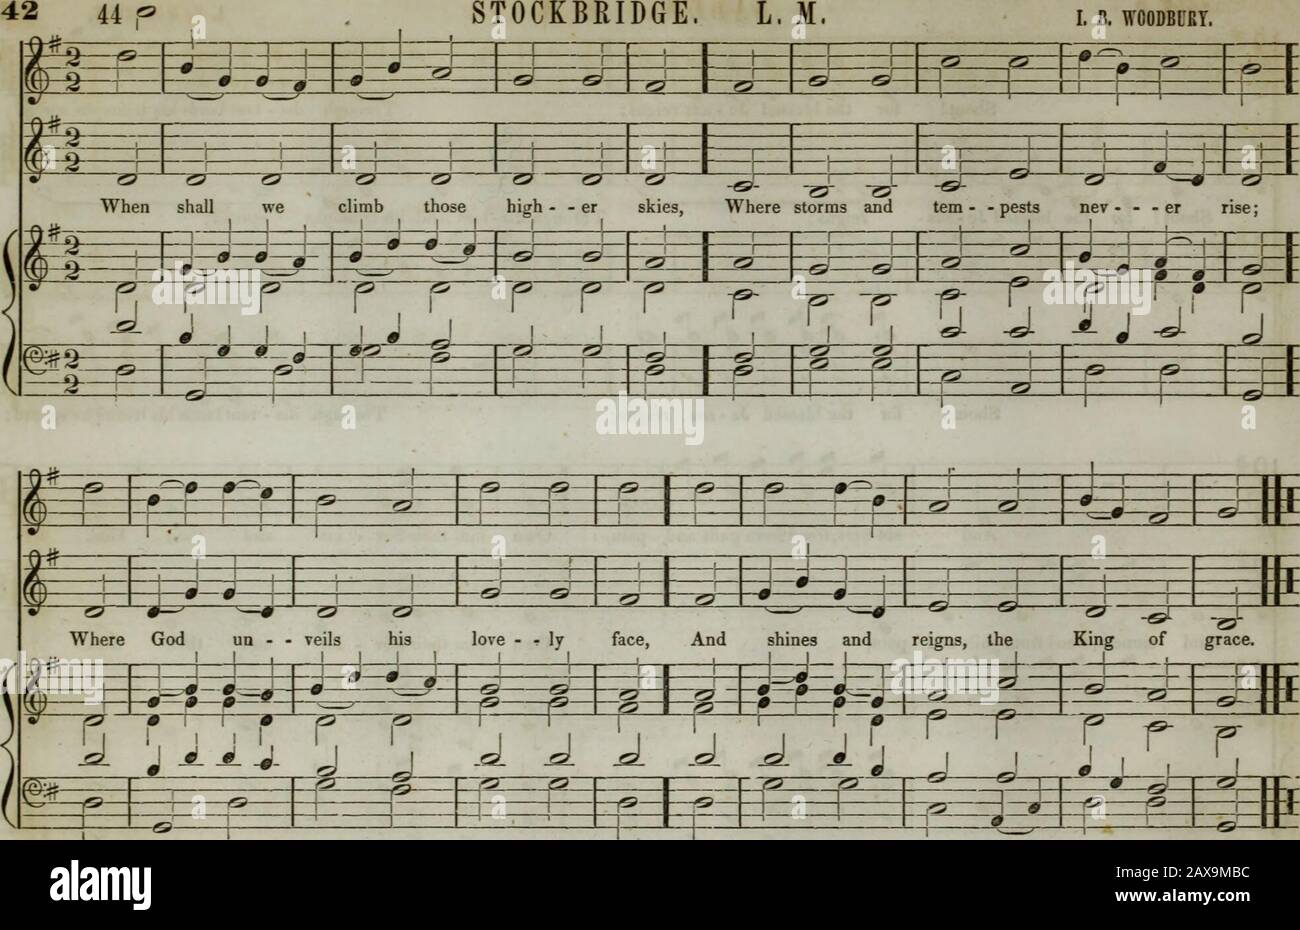 La collection de musique d'église de la Boston Musical Education Society : composée de musiques originales de psaume et d'hymnes, de pièces, de chants et de c.; y compris des compositions adaptées au service de l'Église épiscopale protestante . 0- J Vfi) 4 r #   . Timiez-Vous ! K * * * * * * pour la bienheureuse Je - sus règne; Par dis - les terres de tant ses triomphes se propagent ; (Hf ... N S 1 S K K - -0-â0 0 # â′ O â′ Shout! Pour le bien béni Je - sus règne; Par dis - tant de terres ses triomphes^ W ^ spread; J * s p y is * * 0 0 0 0 9 * ^ &gt; S &gt;# â′ #sÂ« 0 0 0 0 *|=E= 0 0 0 0 0 Â«* . -ft- RS * - -t* #* â′* Shout! pour la vitesse Banque D'Images